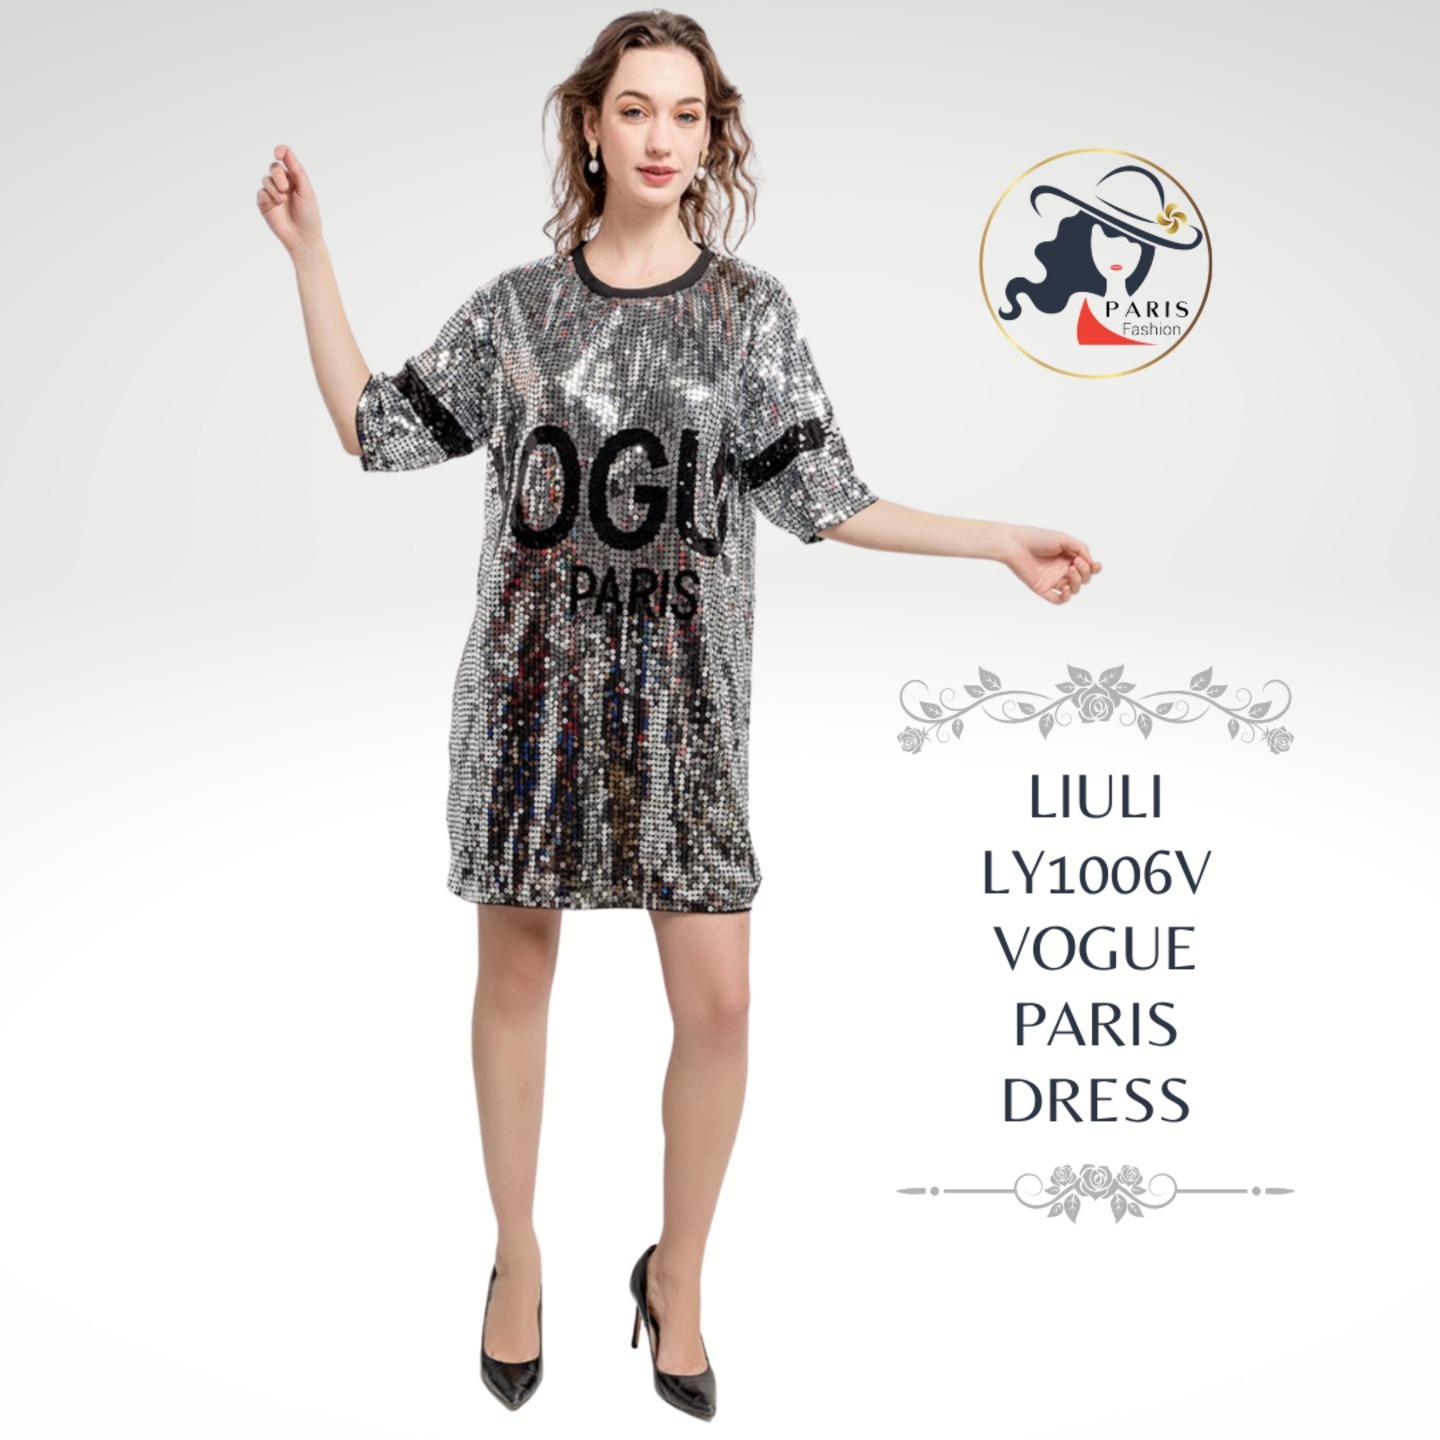 LIULI LY1006V VOGUE PARIS DRESS